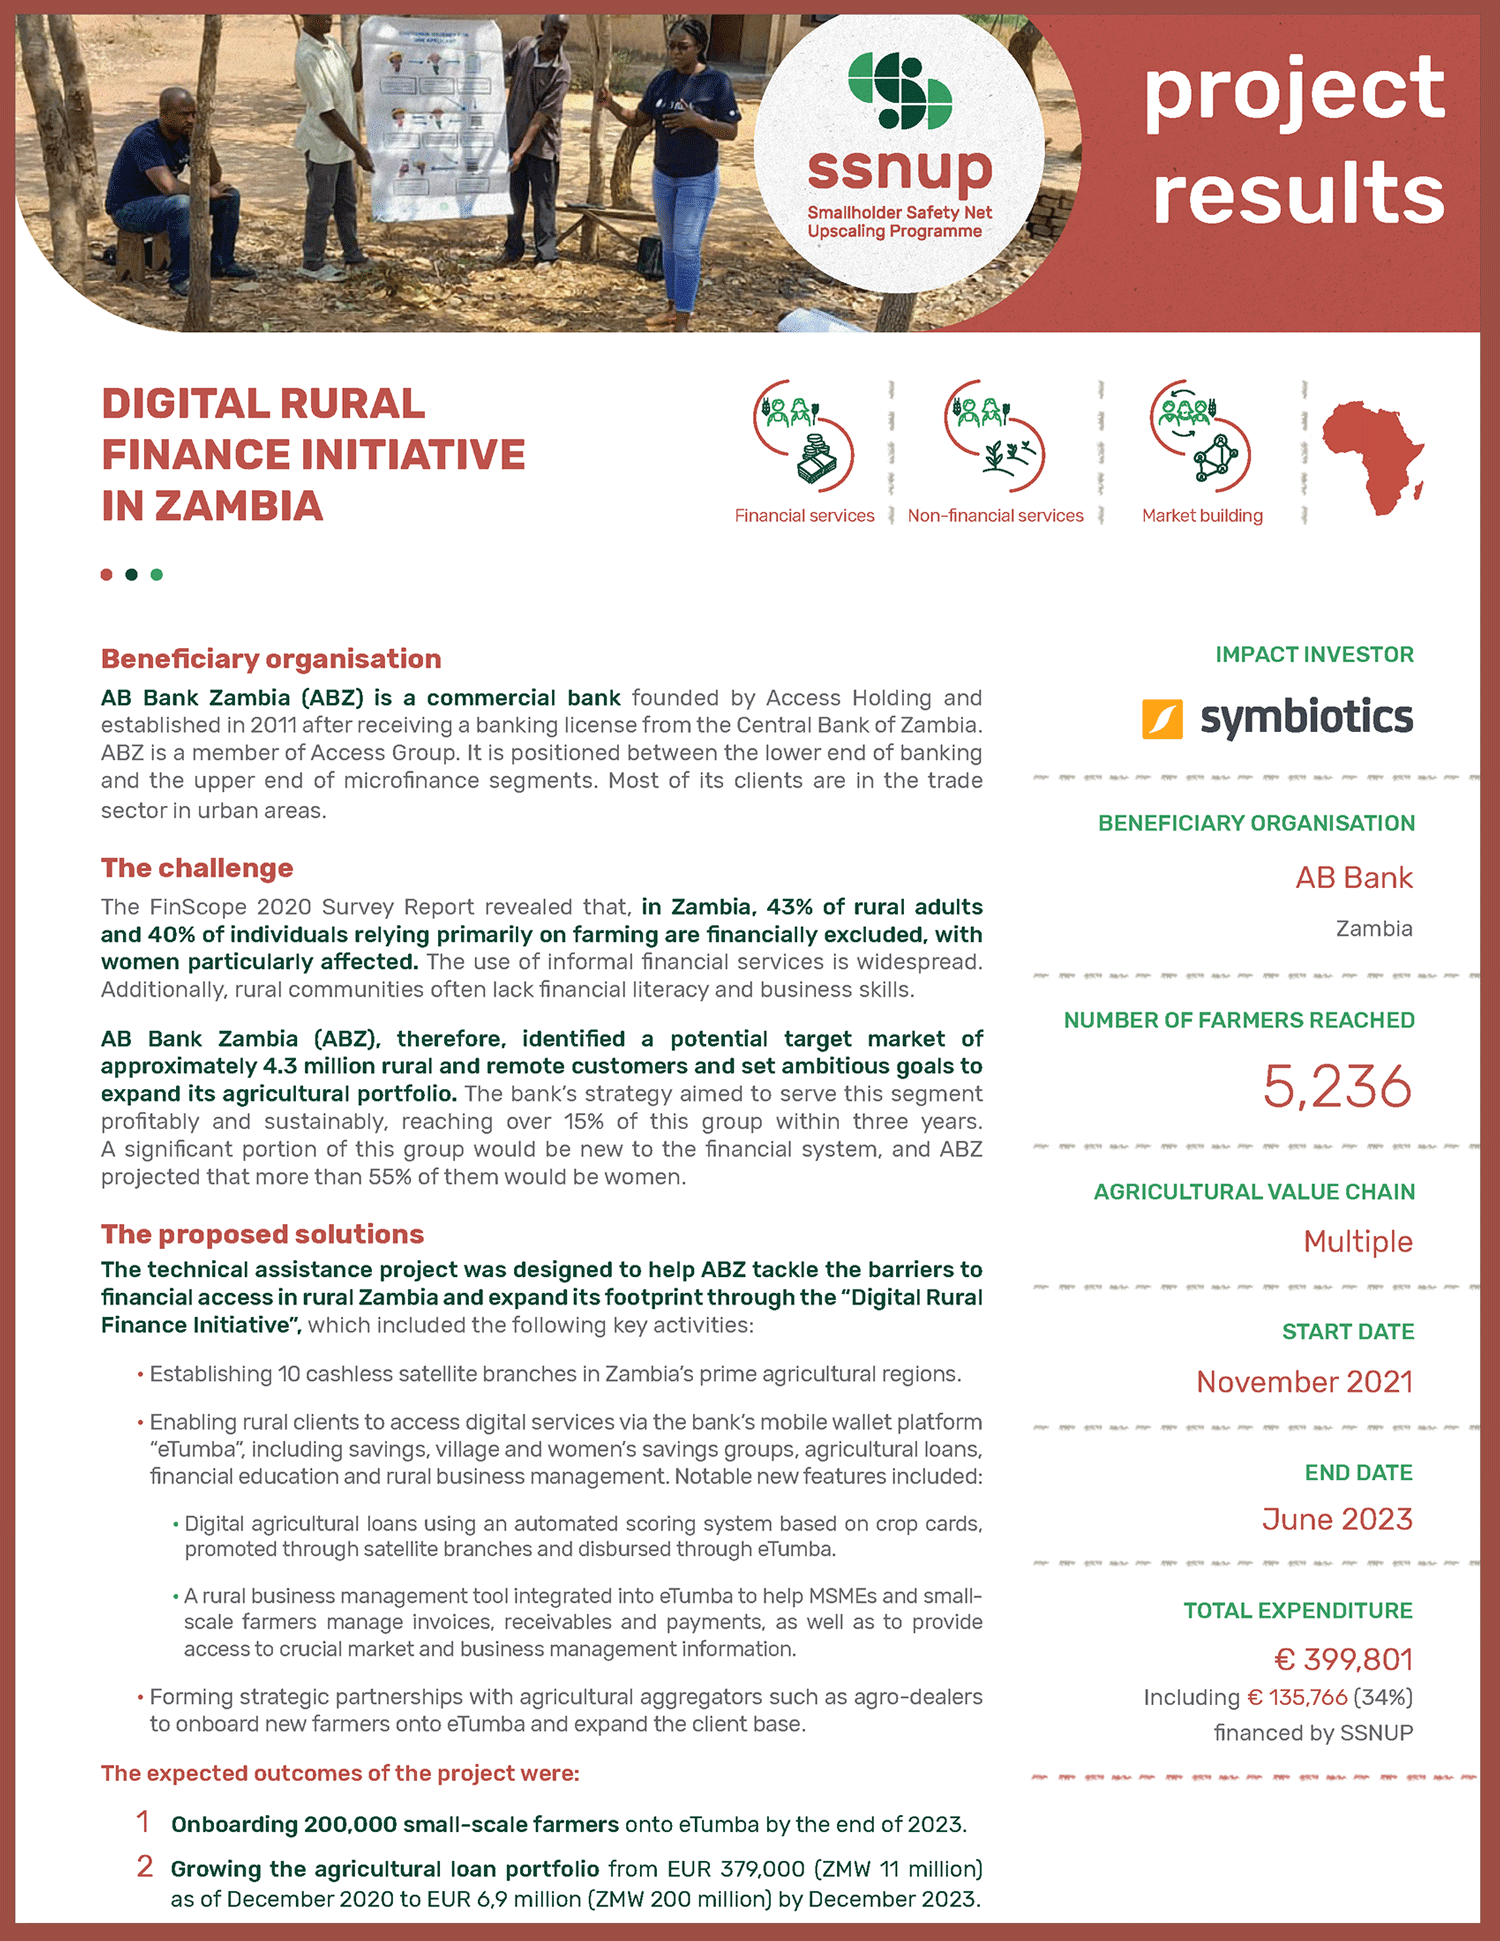 Digital rural finance initiative in Zambia